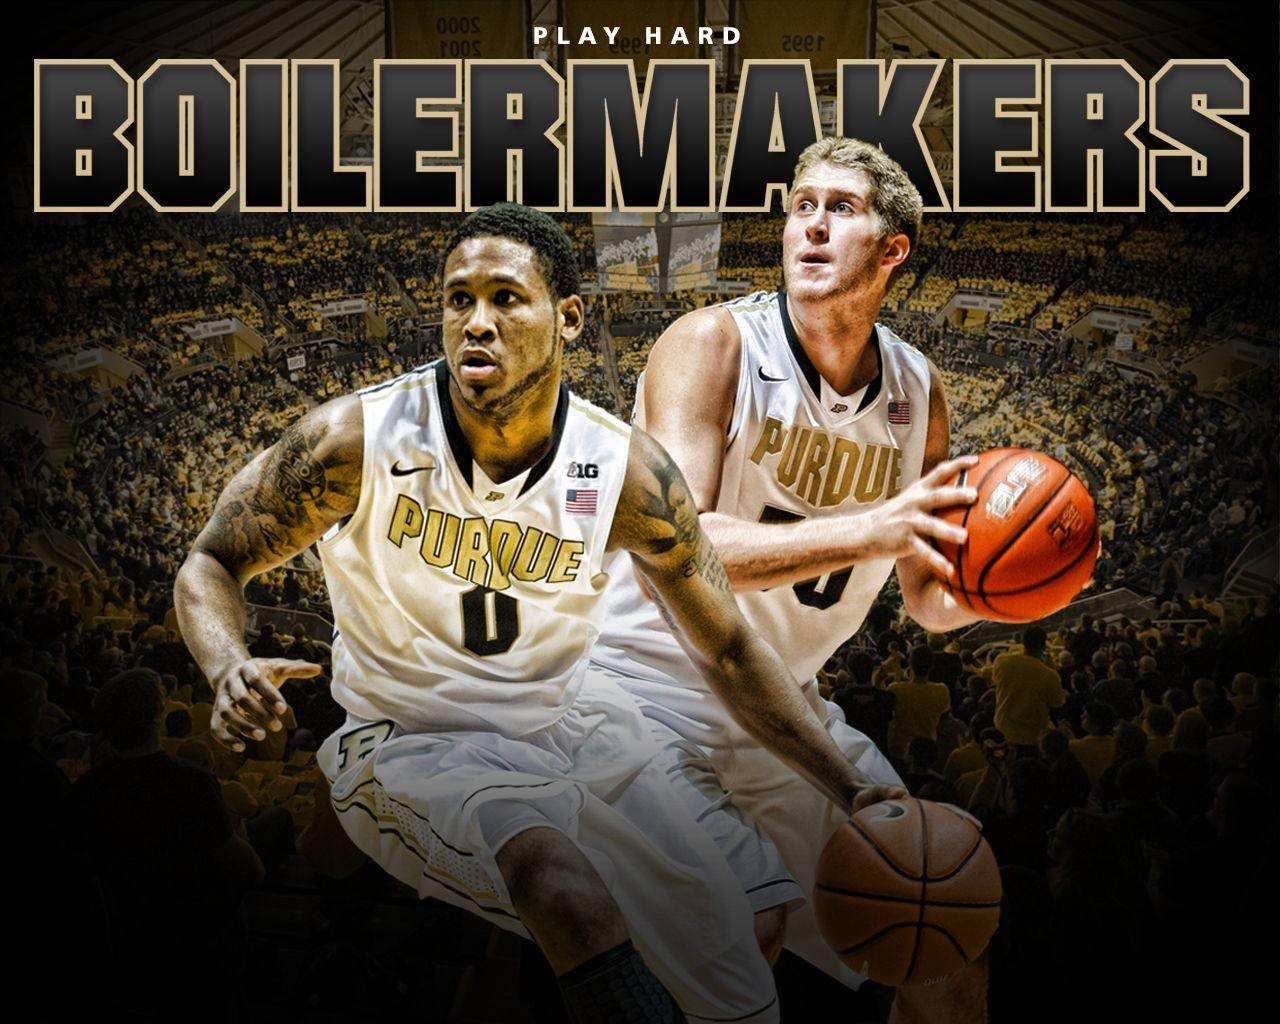 Boilermakers Basketball Poster Purdue University Wallpaper